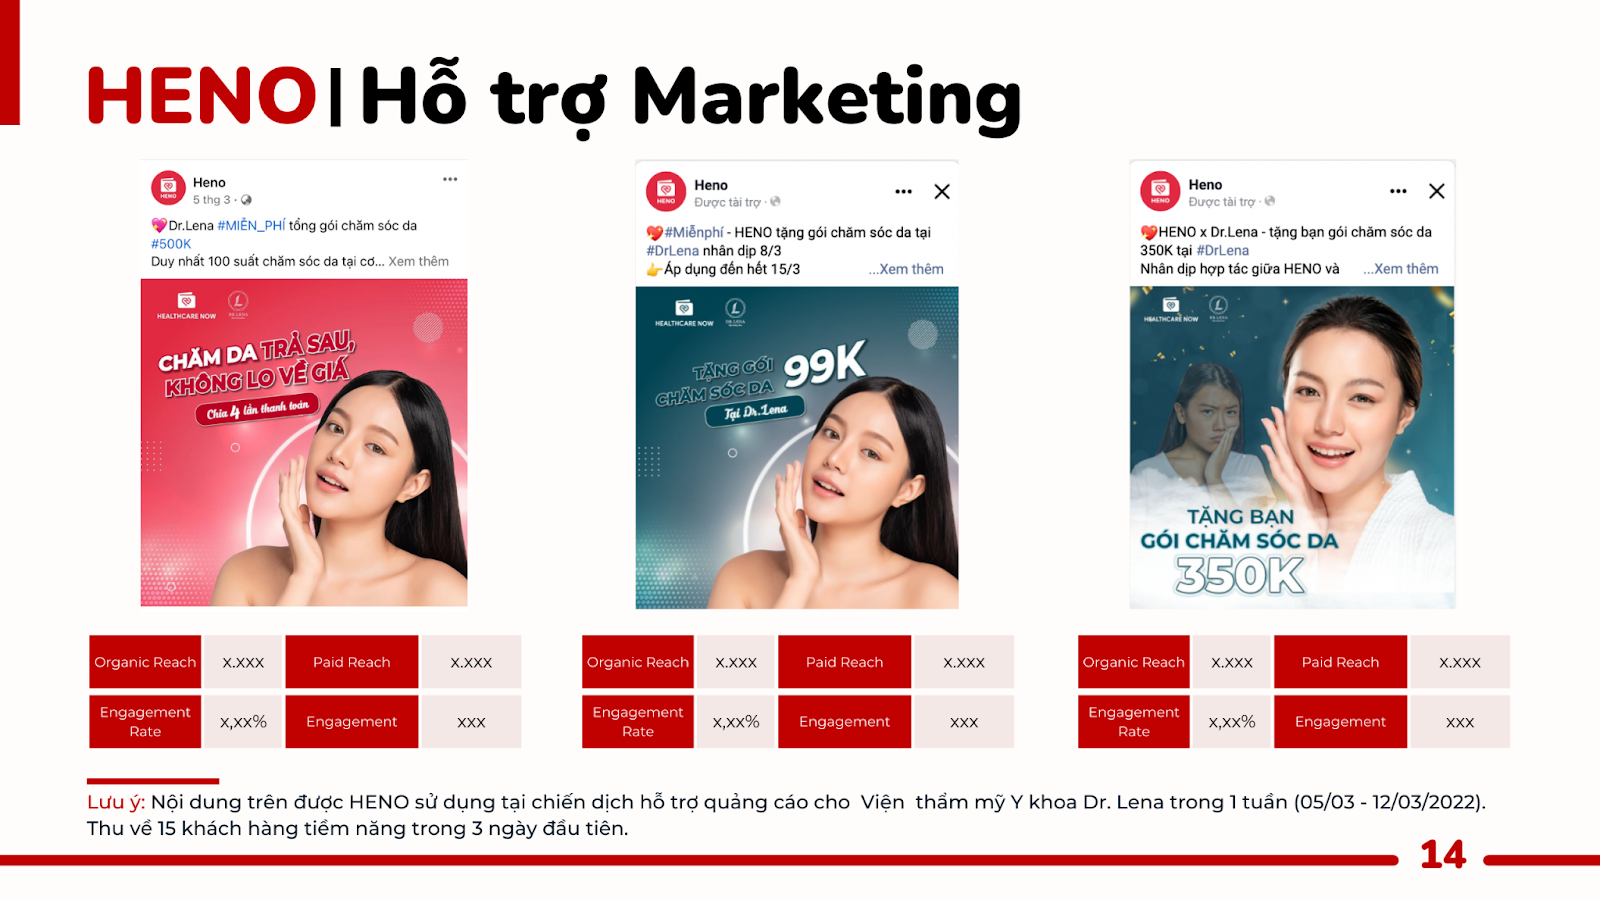 HENO hỗ trợ marketing cho đối tác